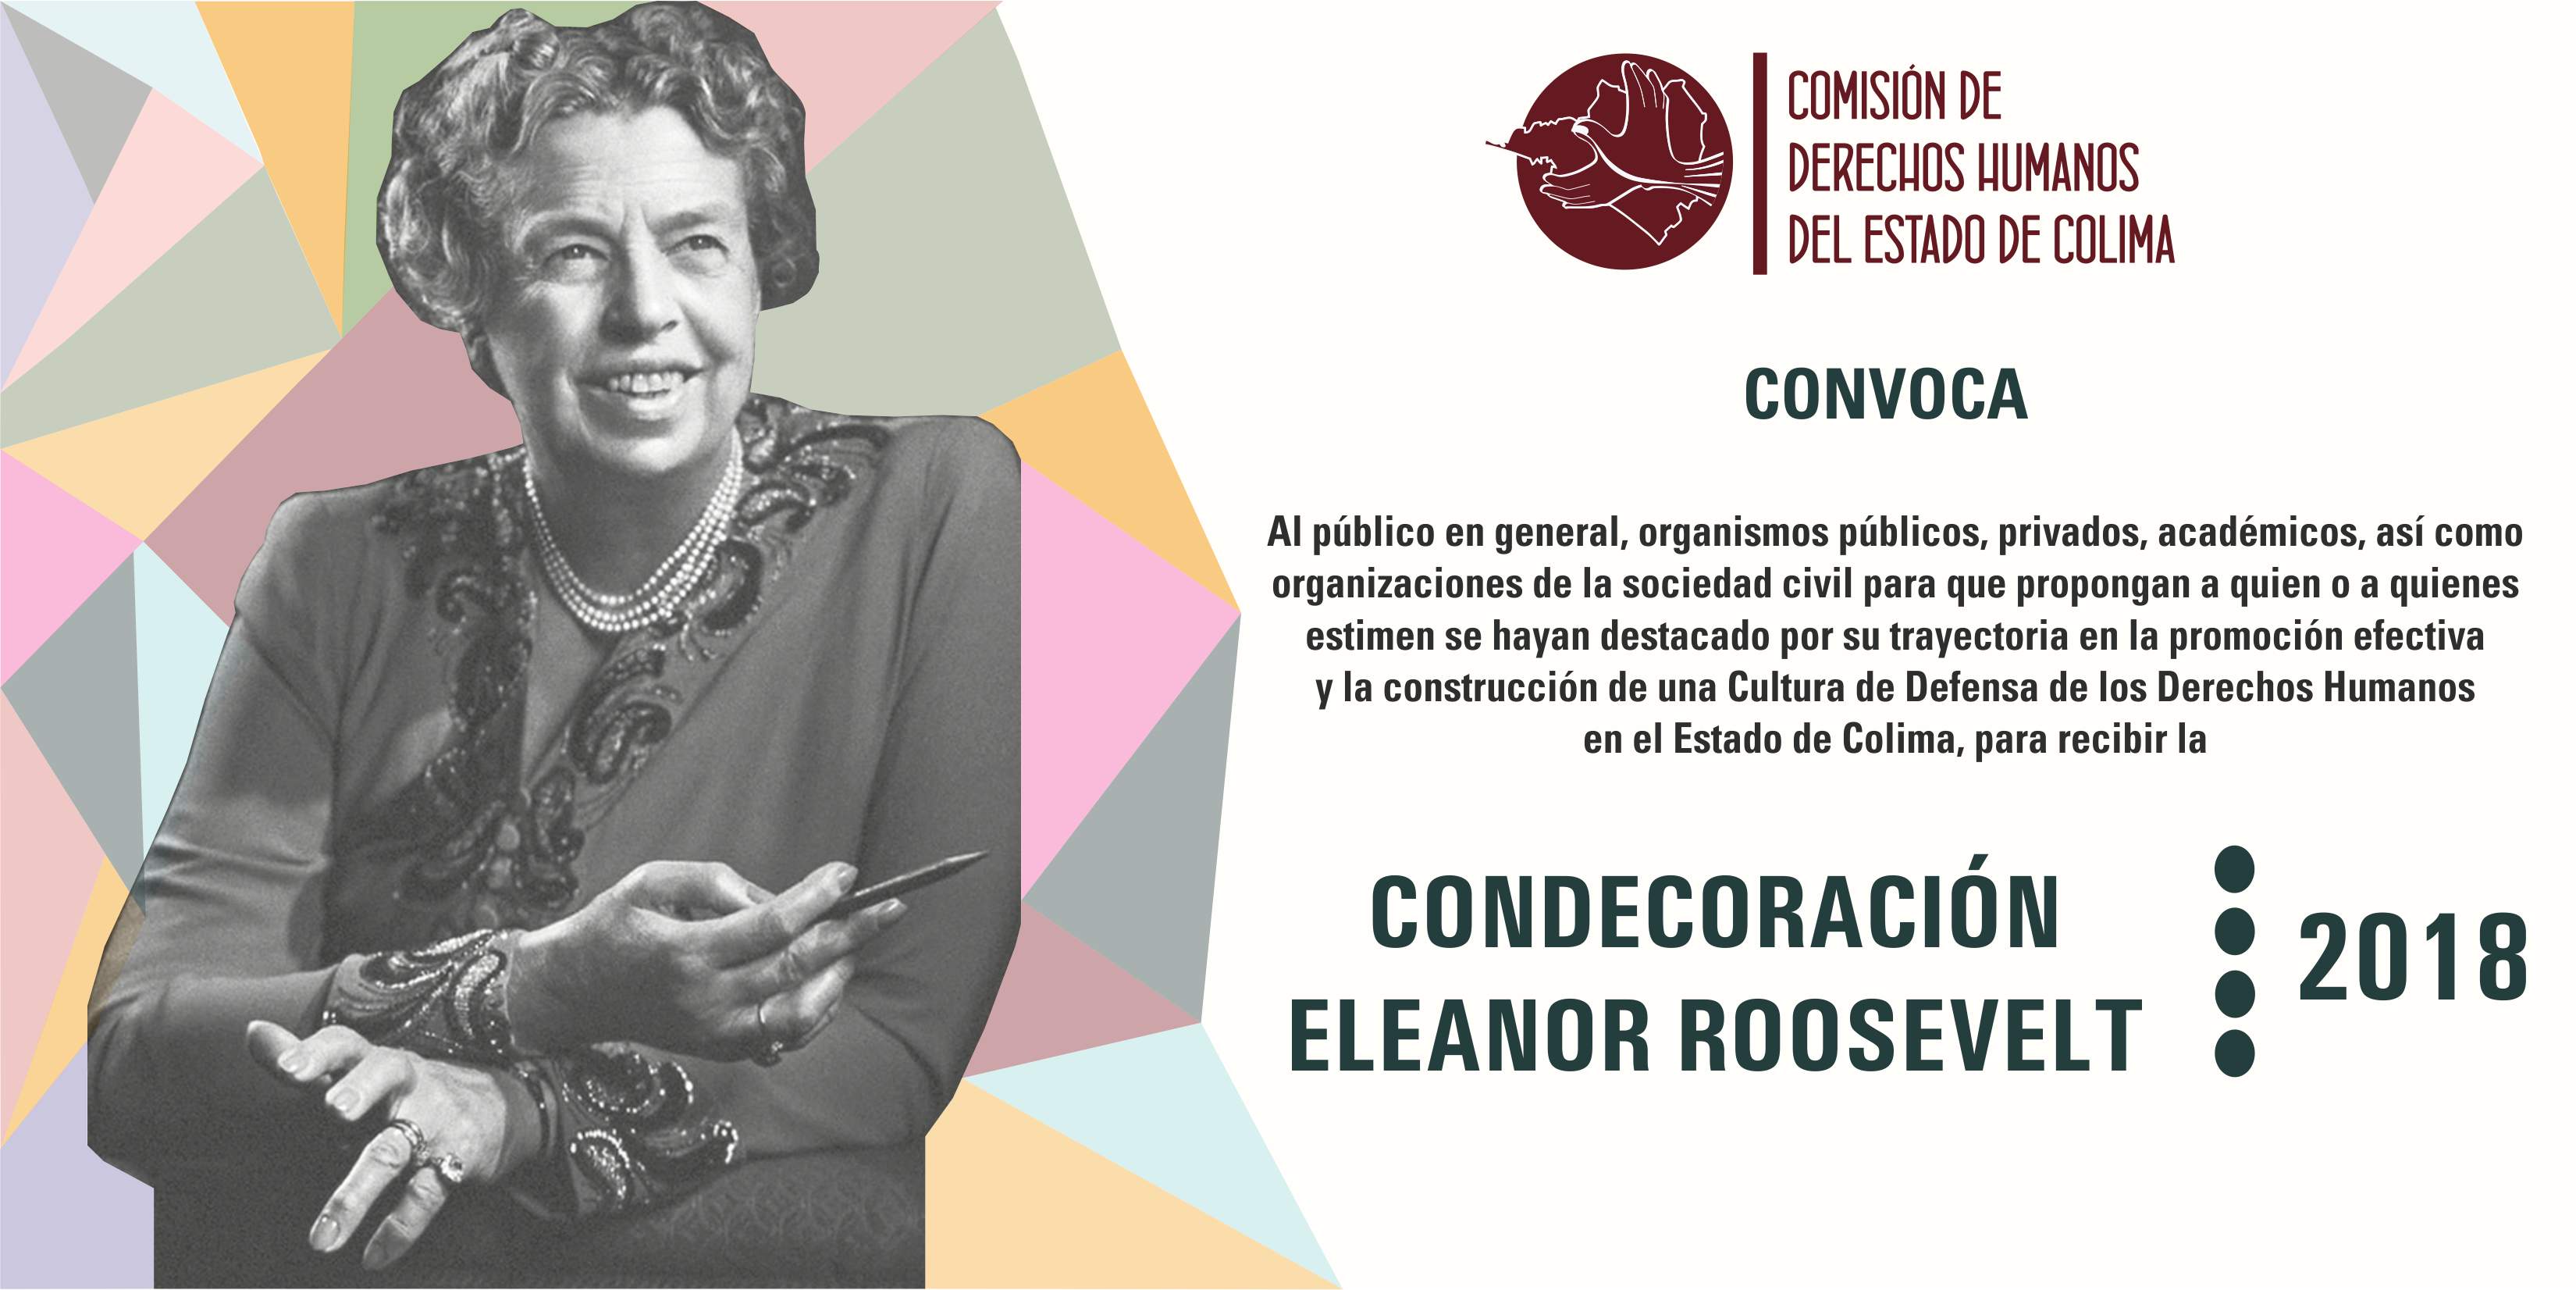 Convoca CDHEC a la Condecoración “Eleanor Roosevelt 2018”